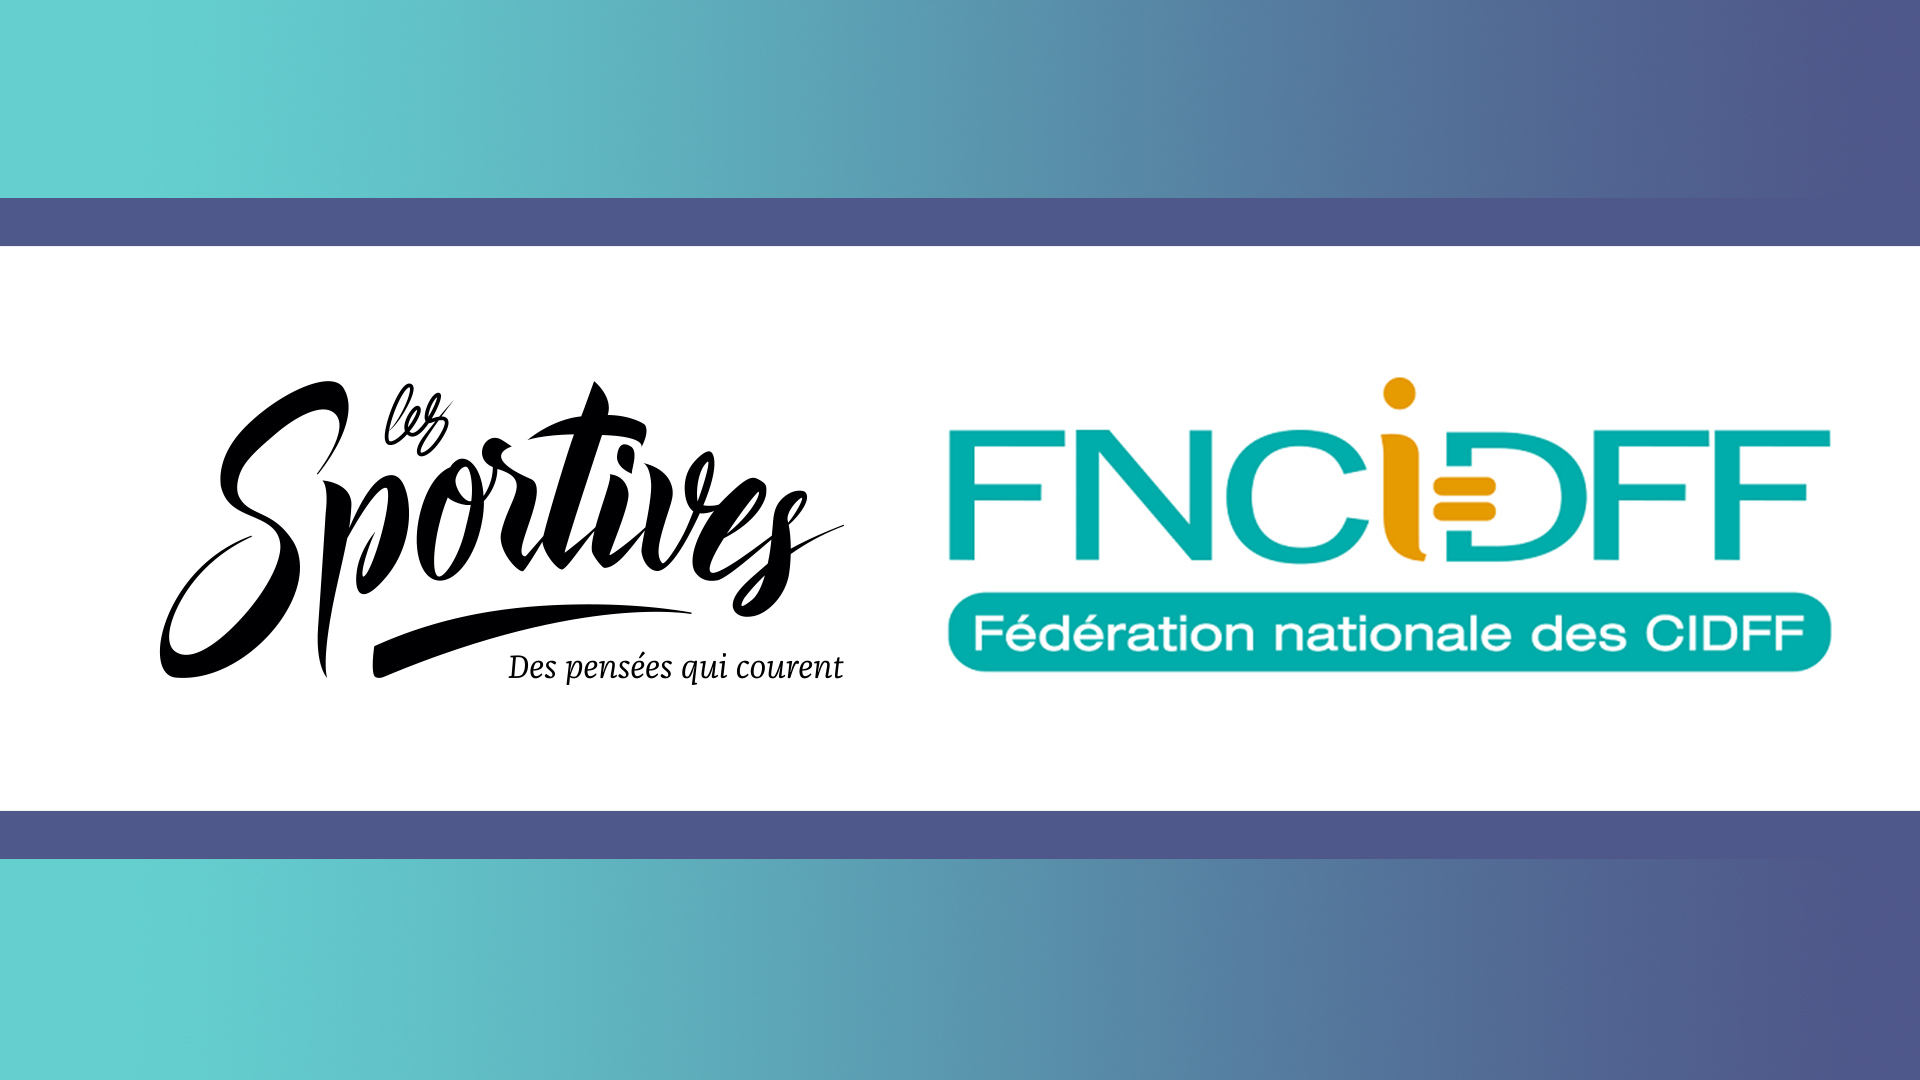 bannière annonce partenariat FNCIDFF